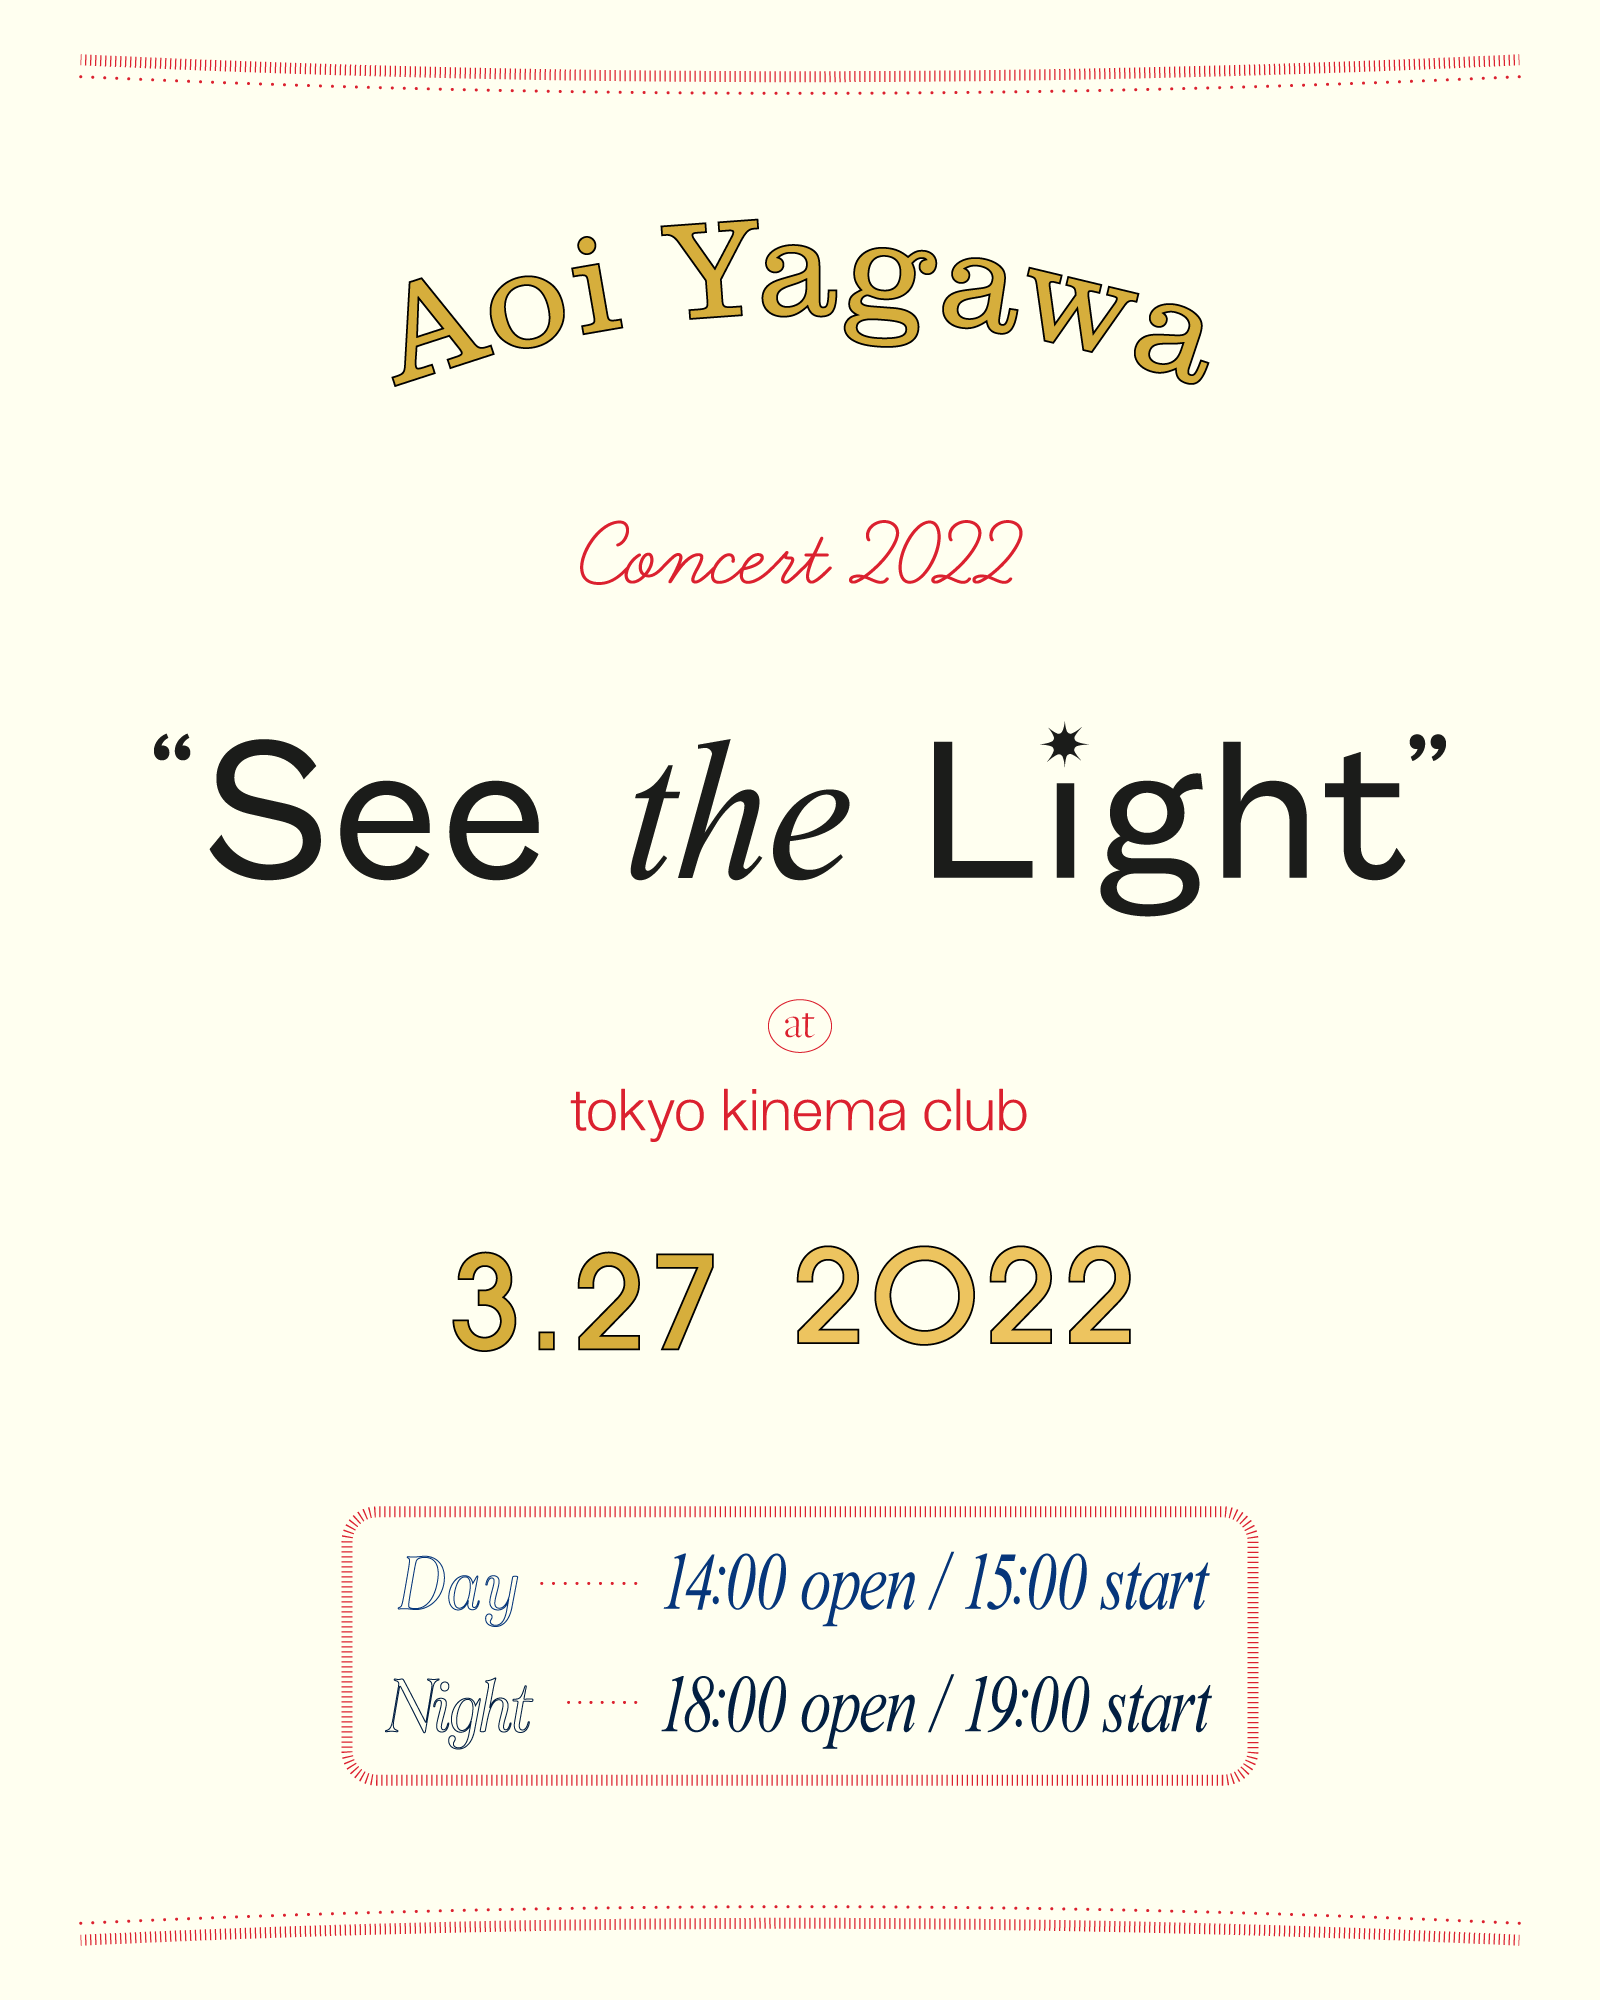 矢川葵 コンサート 2022『See the Light』